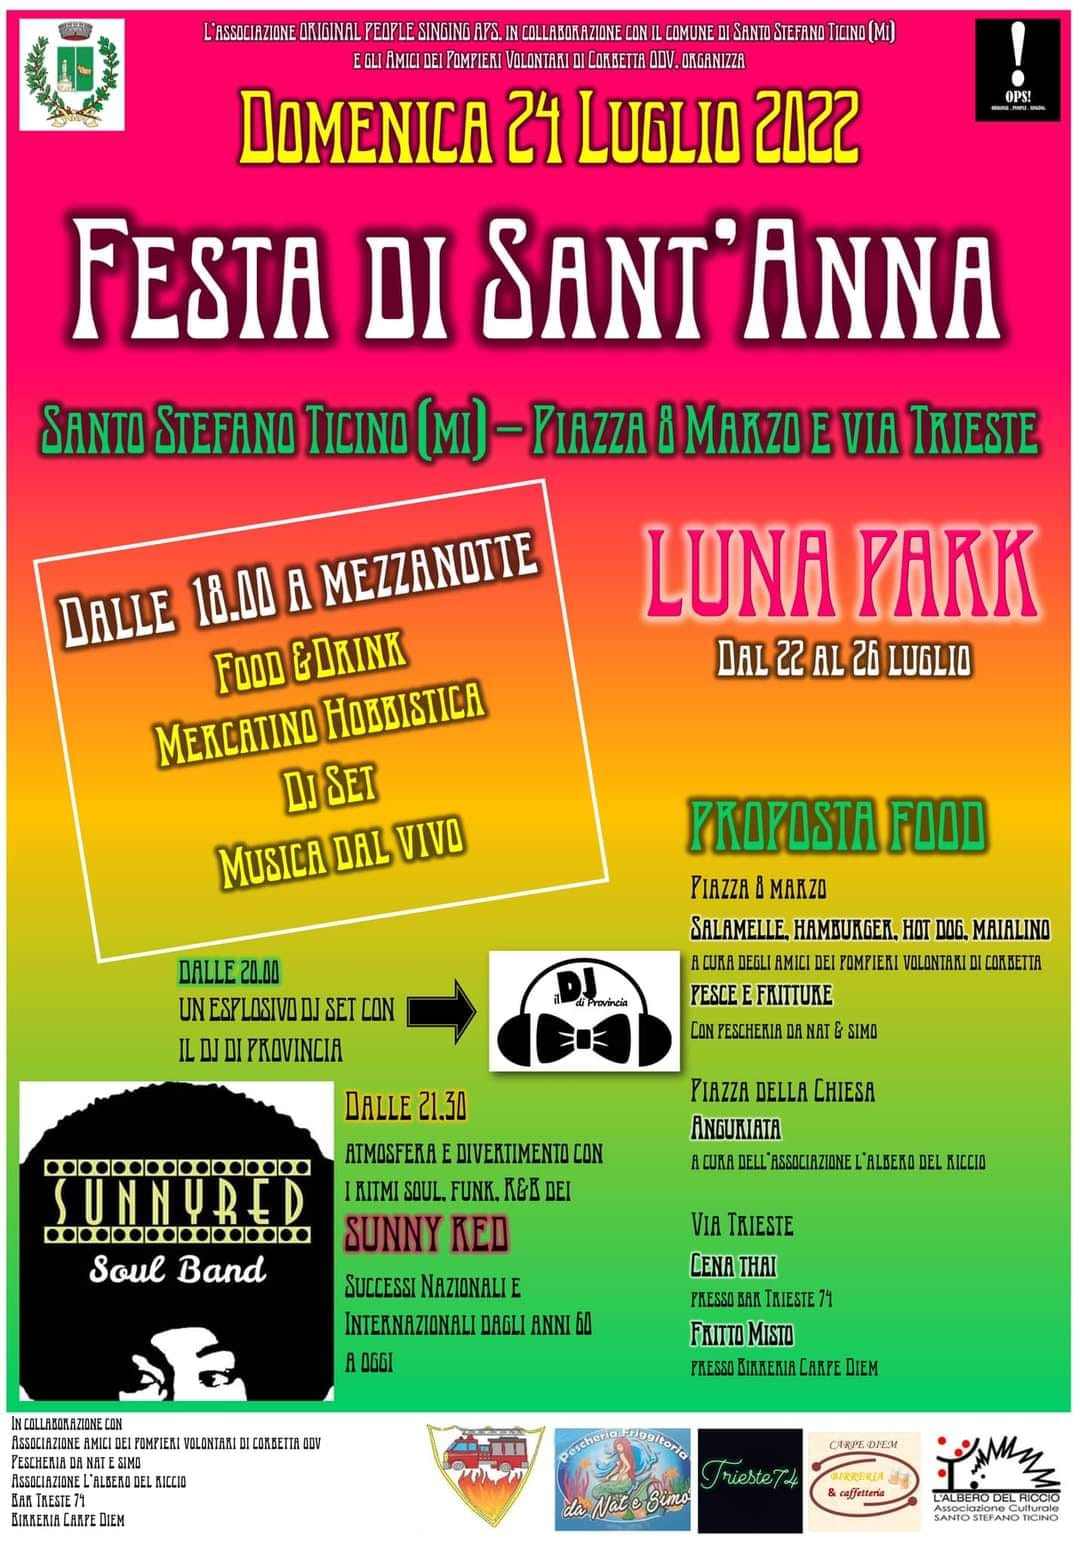 Santo Stefano Ticino (MI)
"Festa di Sant'Anna e Mercatino"
24 Luglio 2022